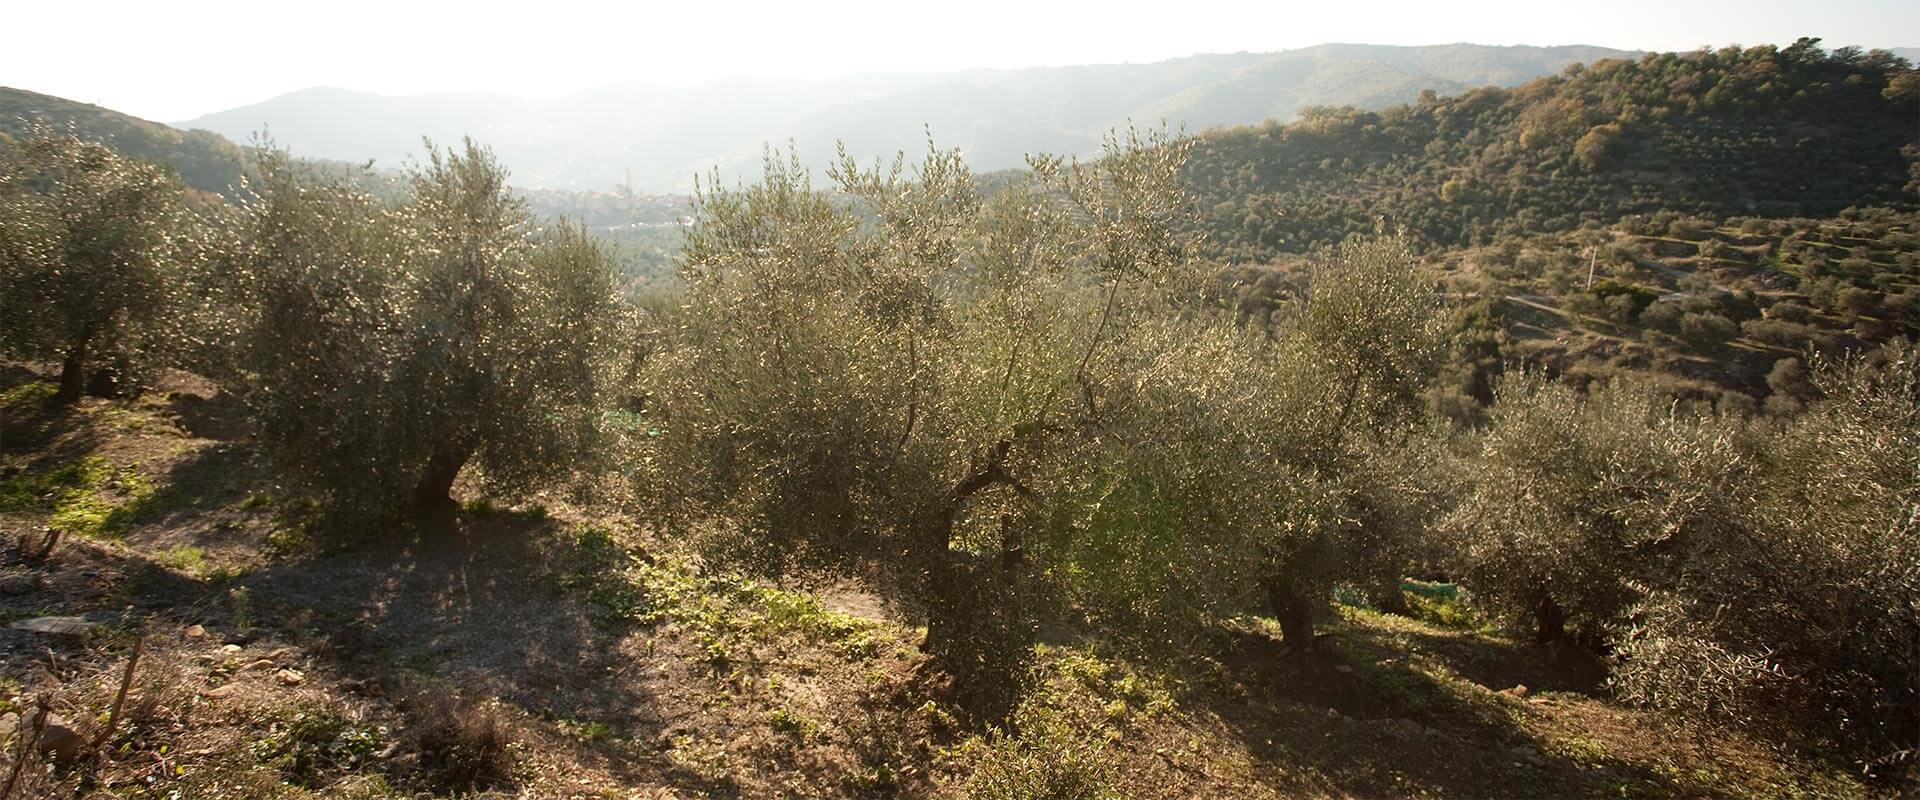 Wie man einen Olivenbaum anpflanzt – Fratelli Carli